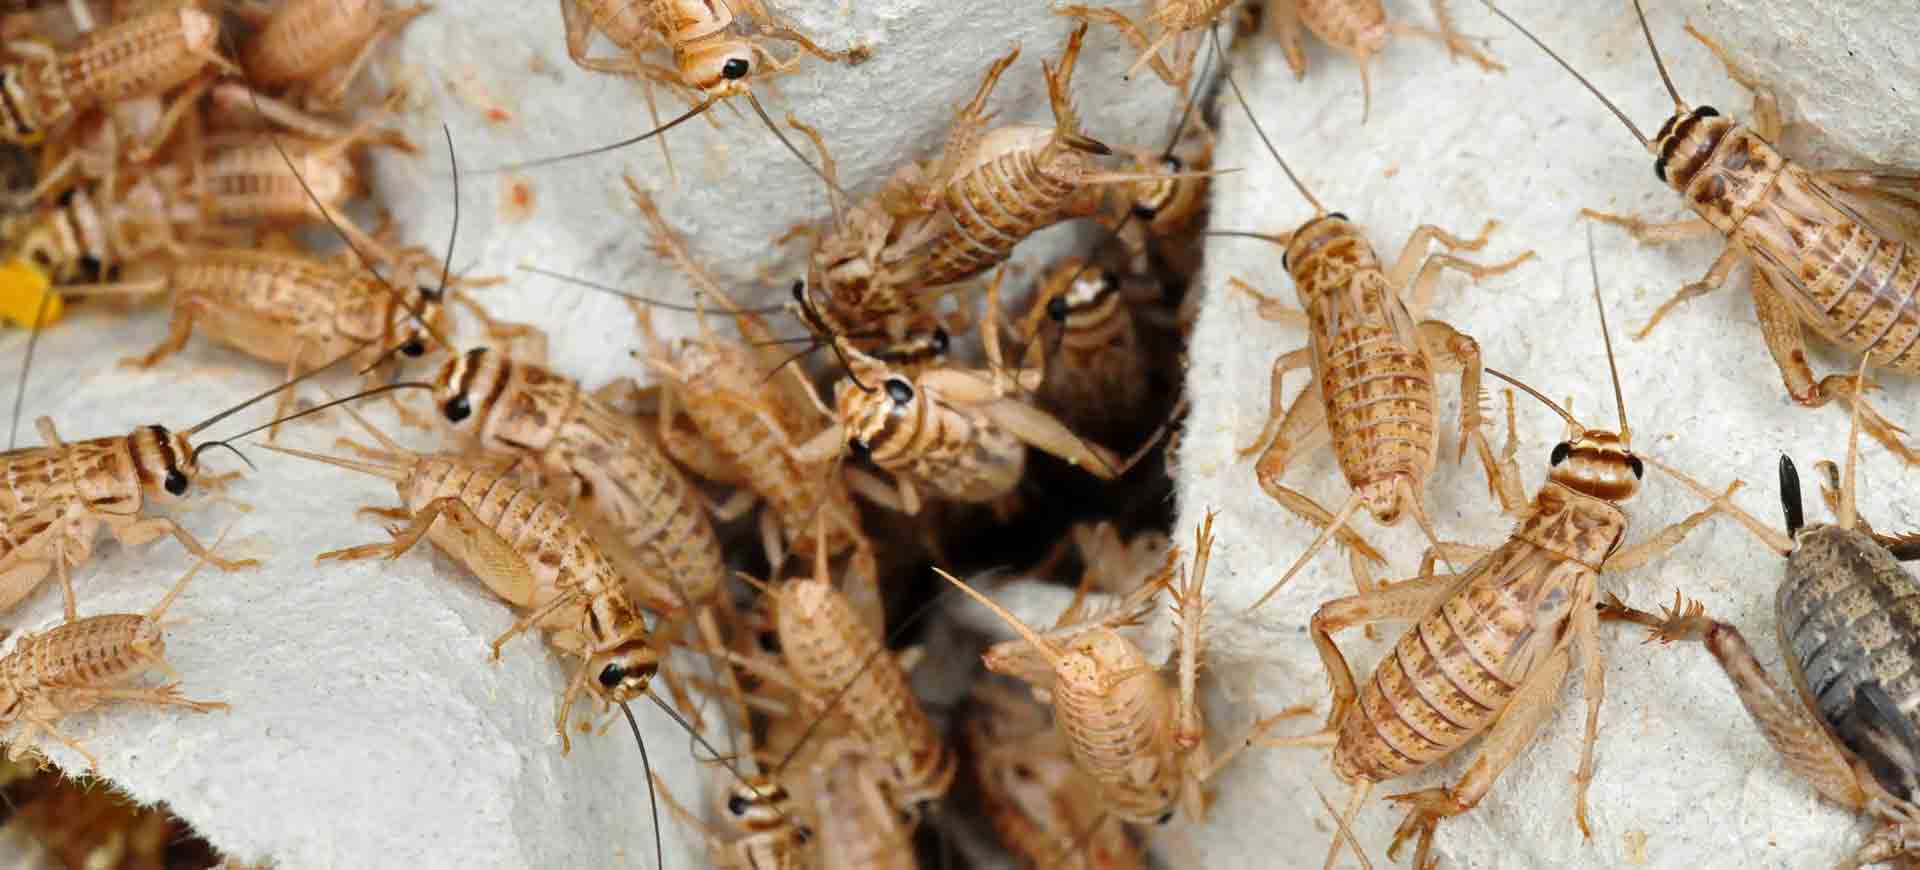 cricket pest control bonita